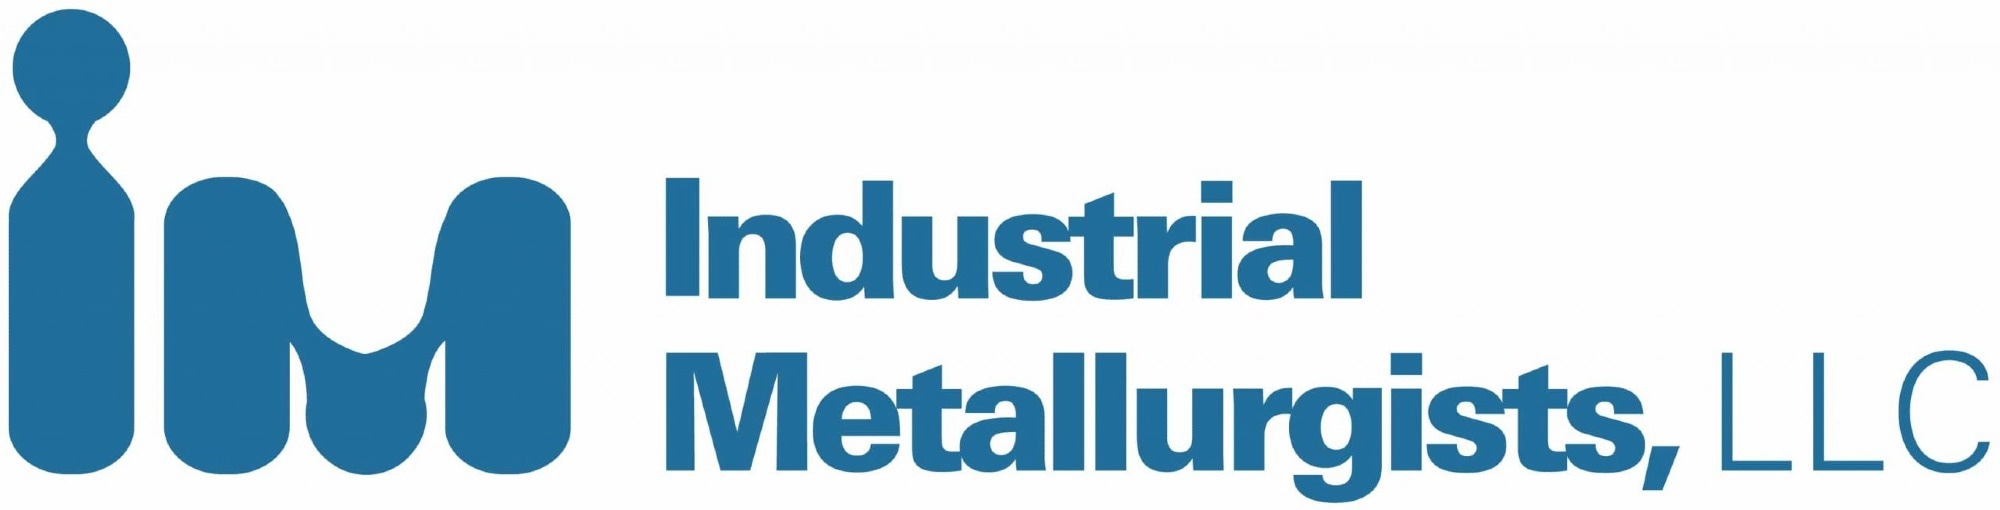 Industrial Metallurgists